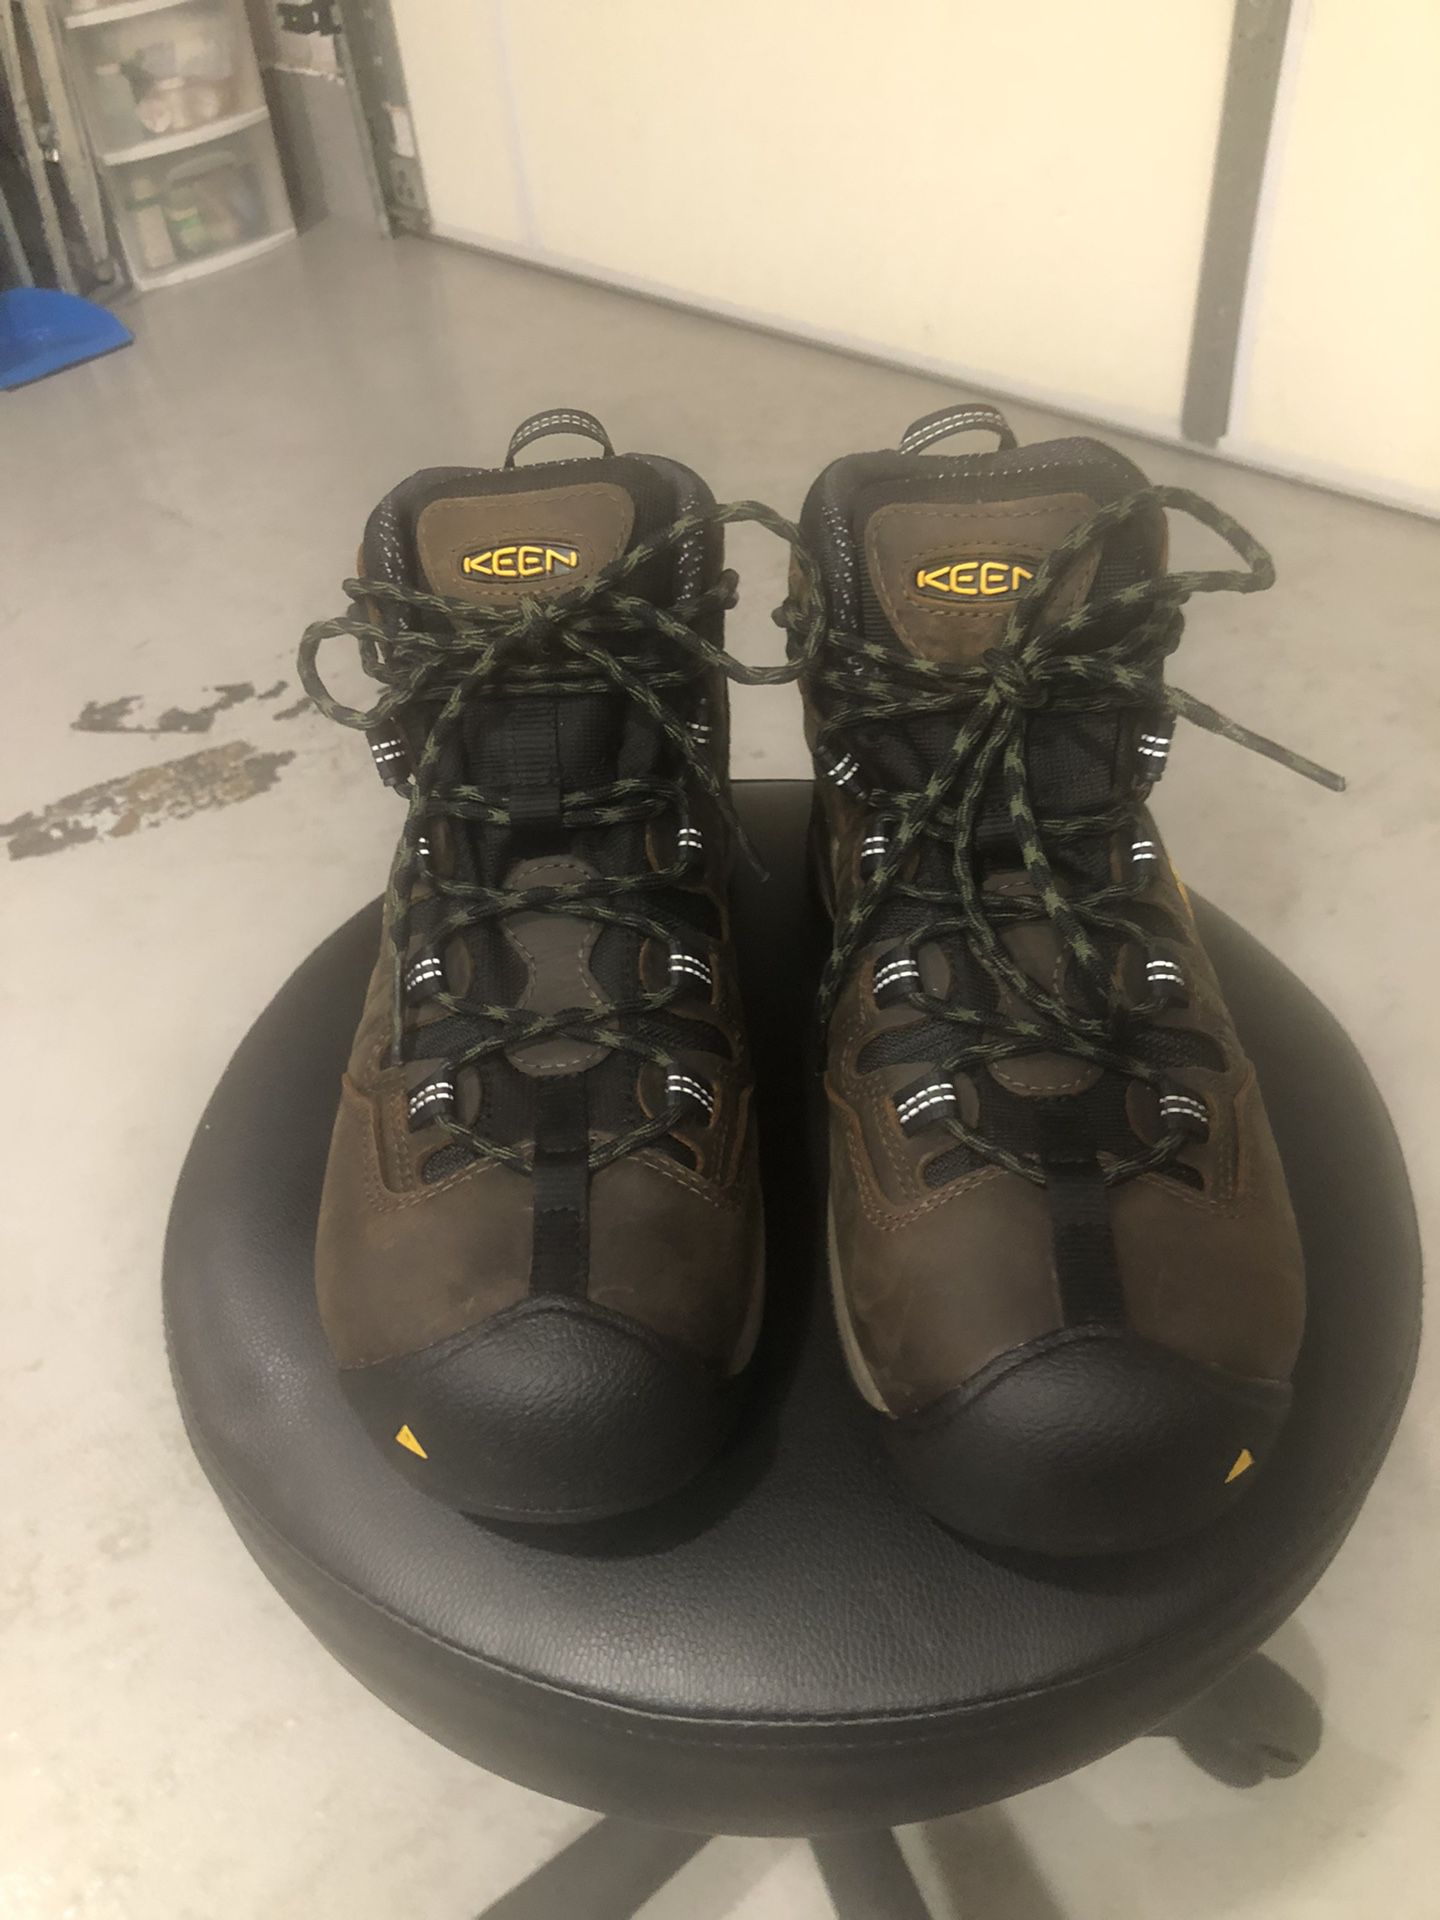 Keen Work Boot Brand New Size 8.5 Men's Waterproof Comp-Toe